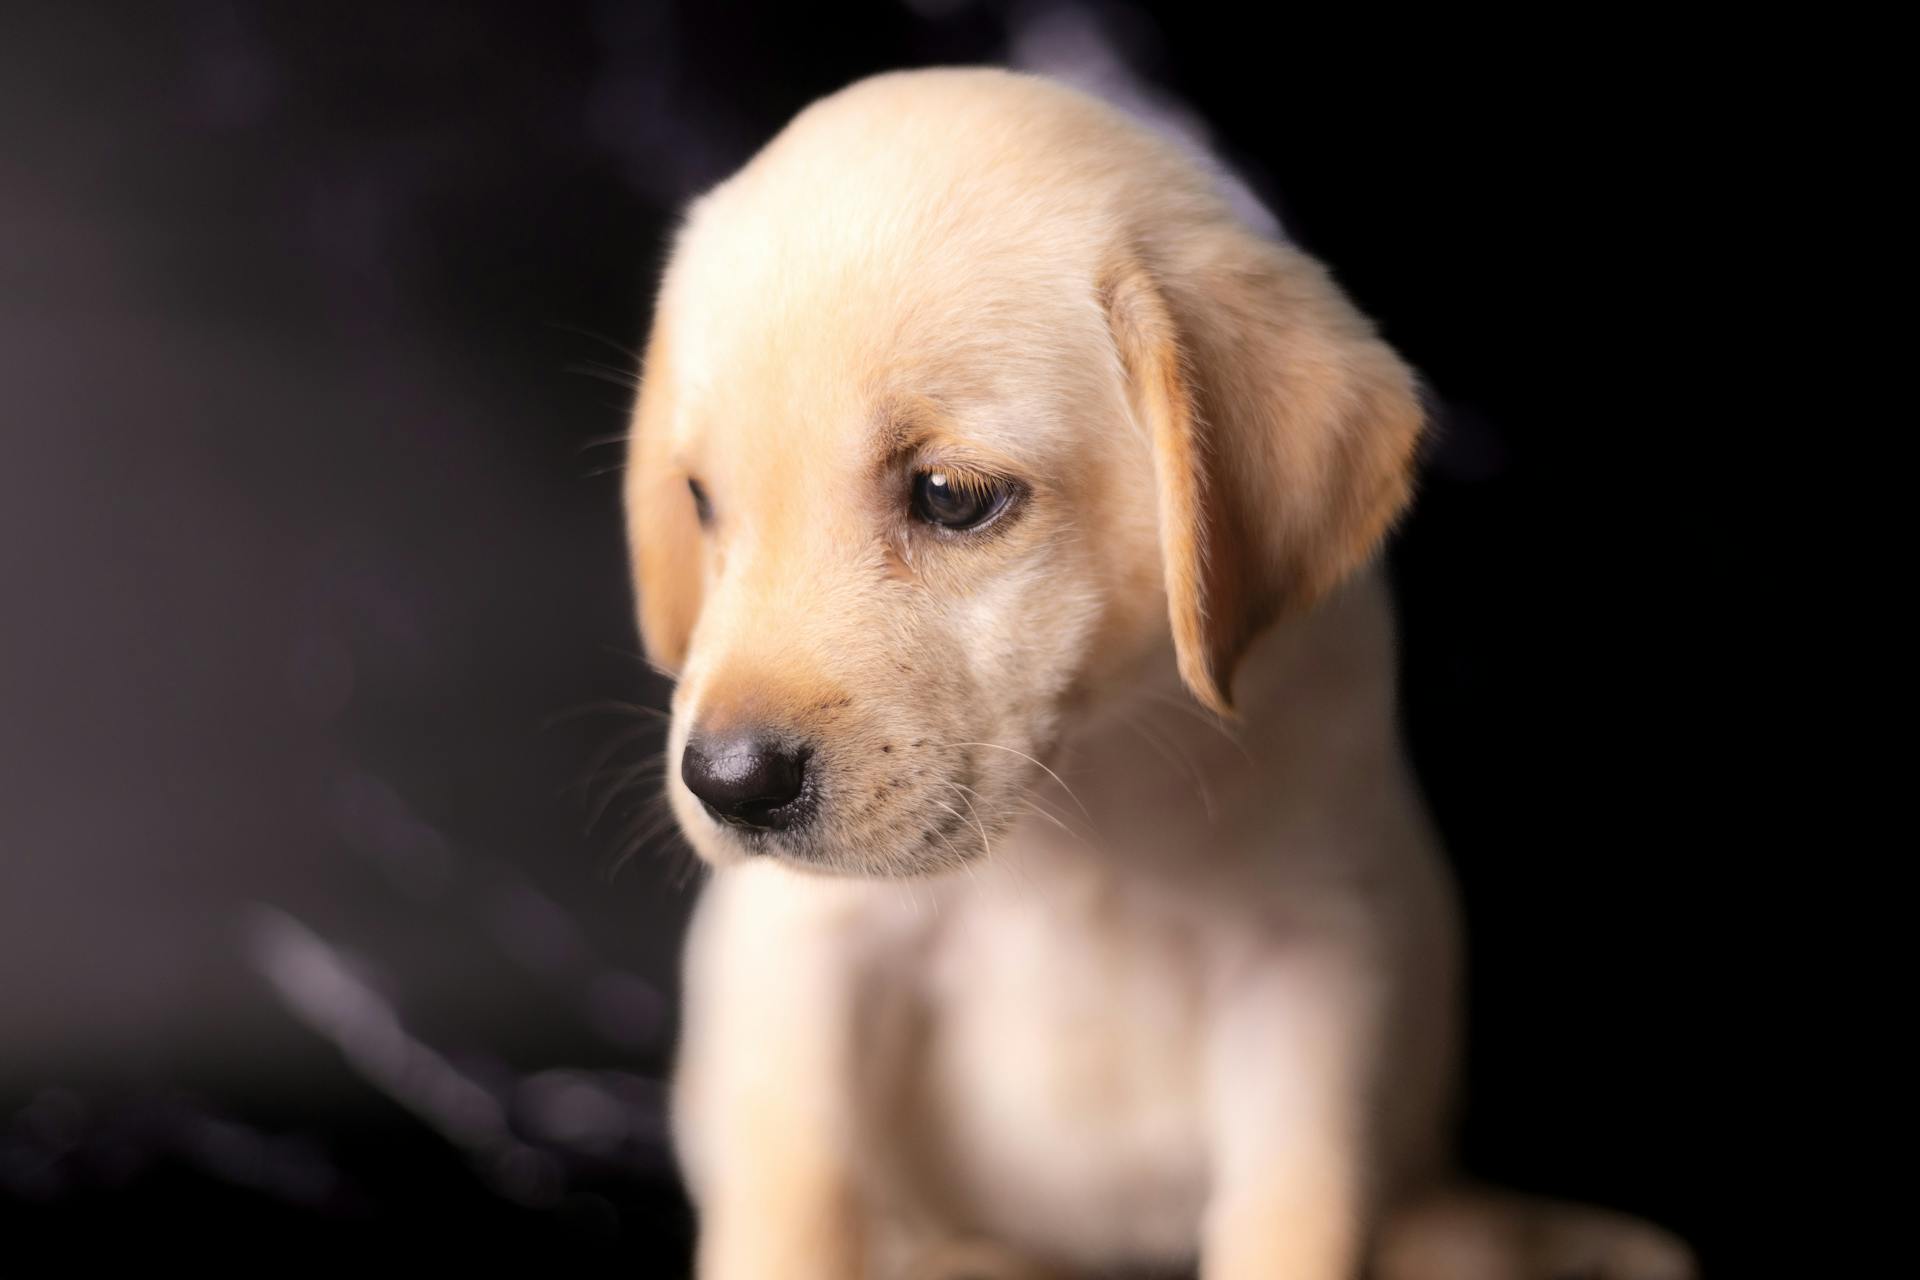 A puppy | Source: Pexels